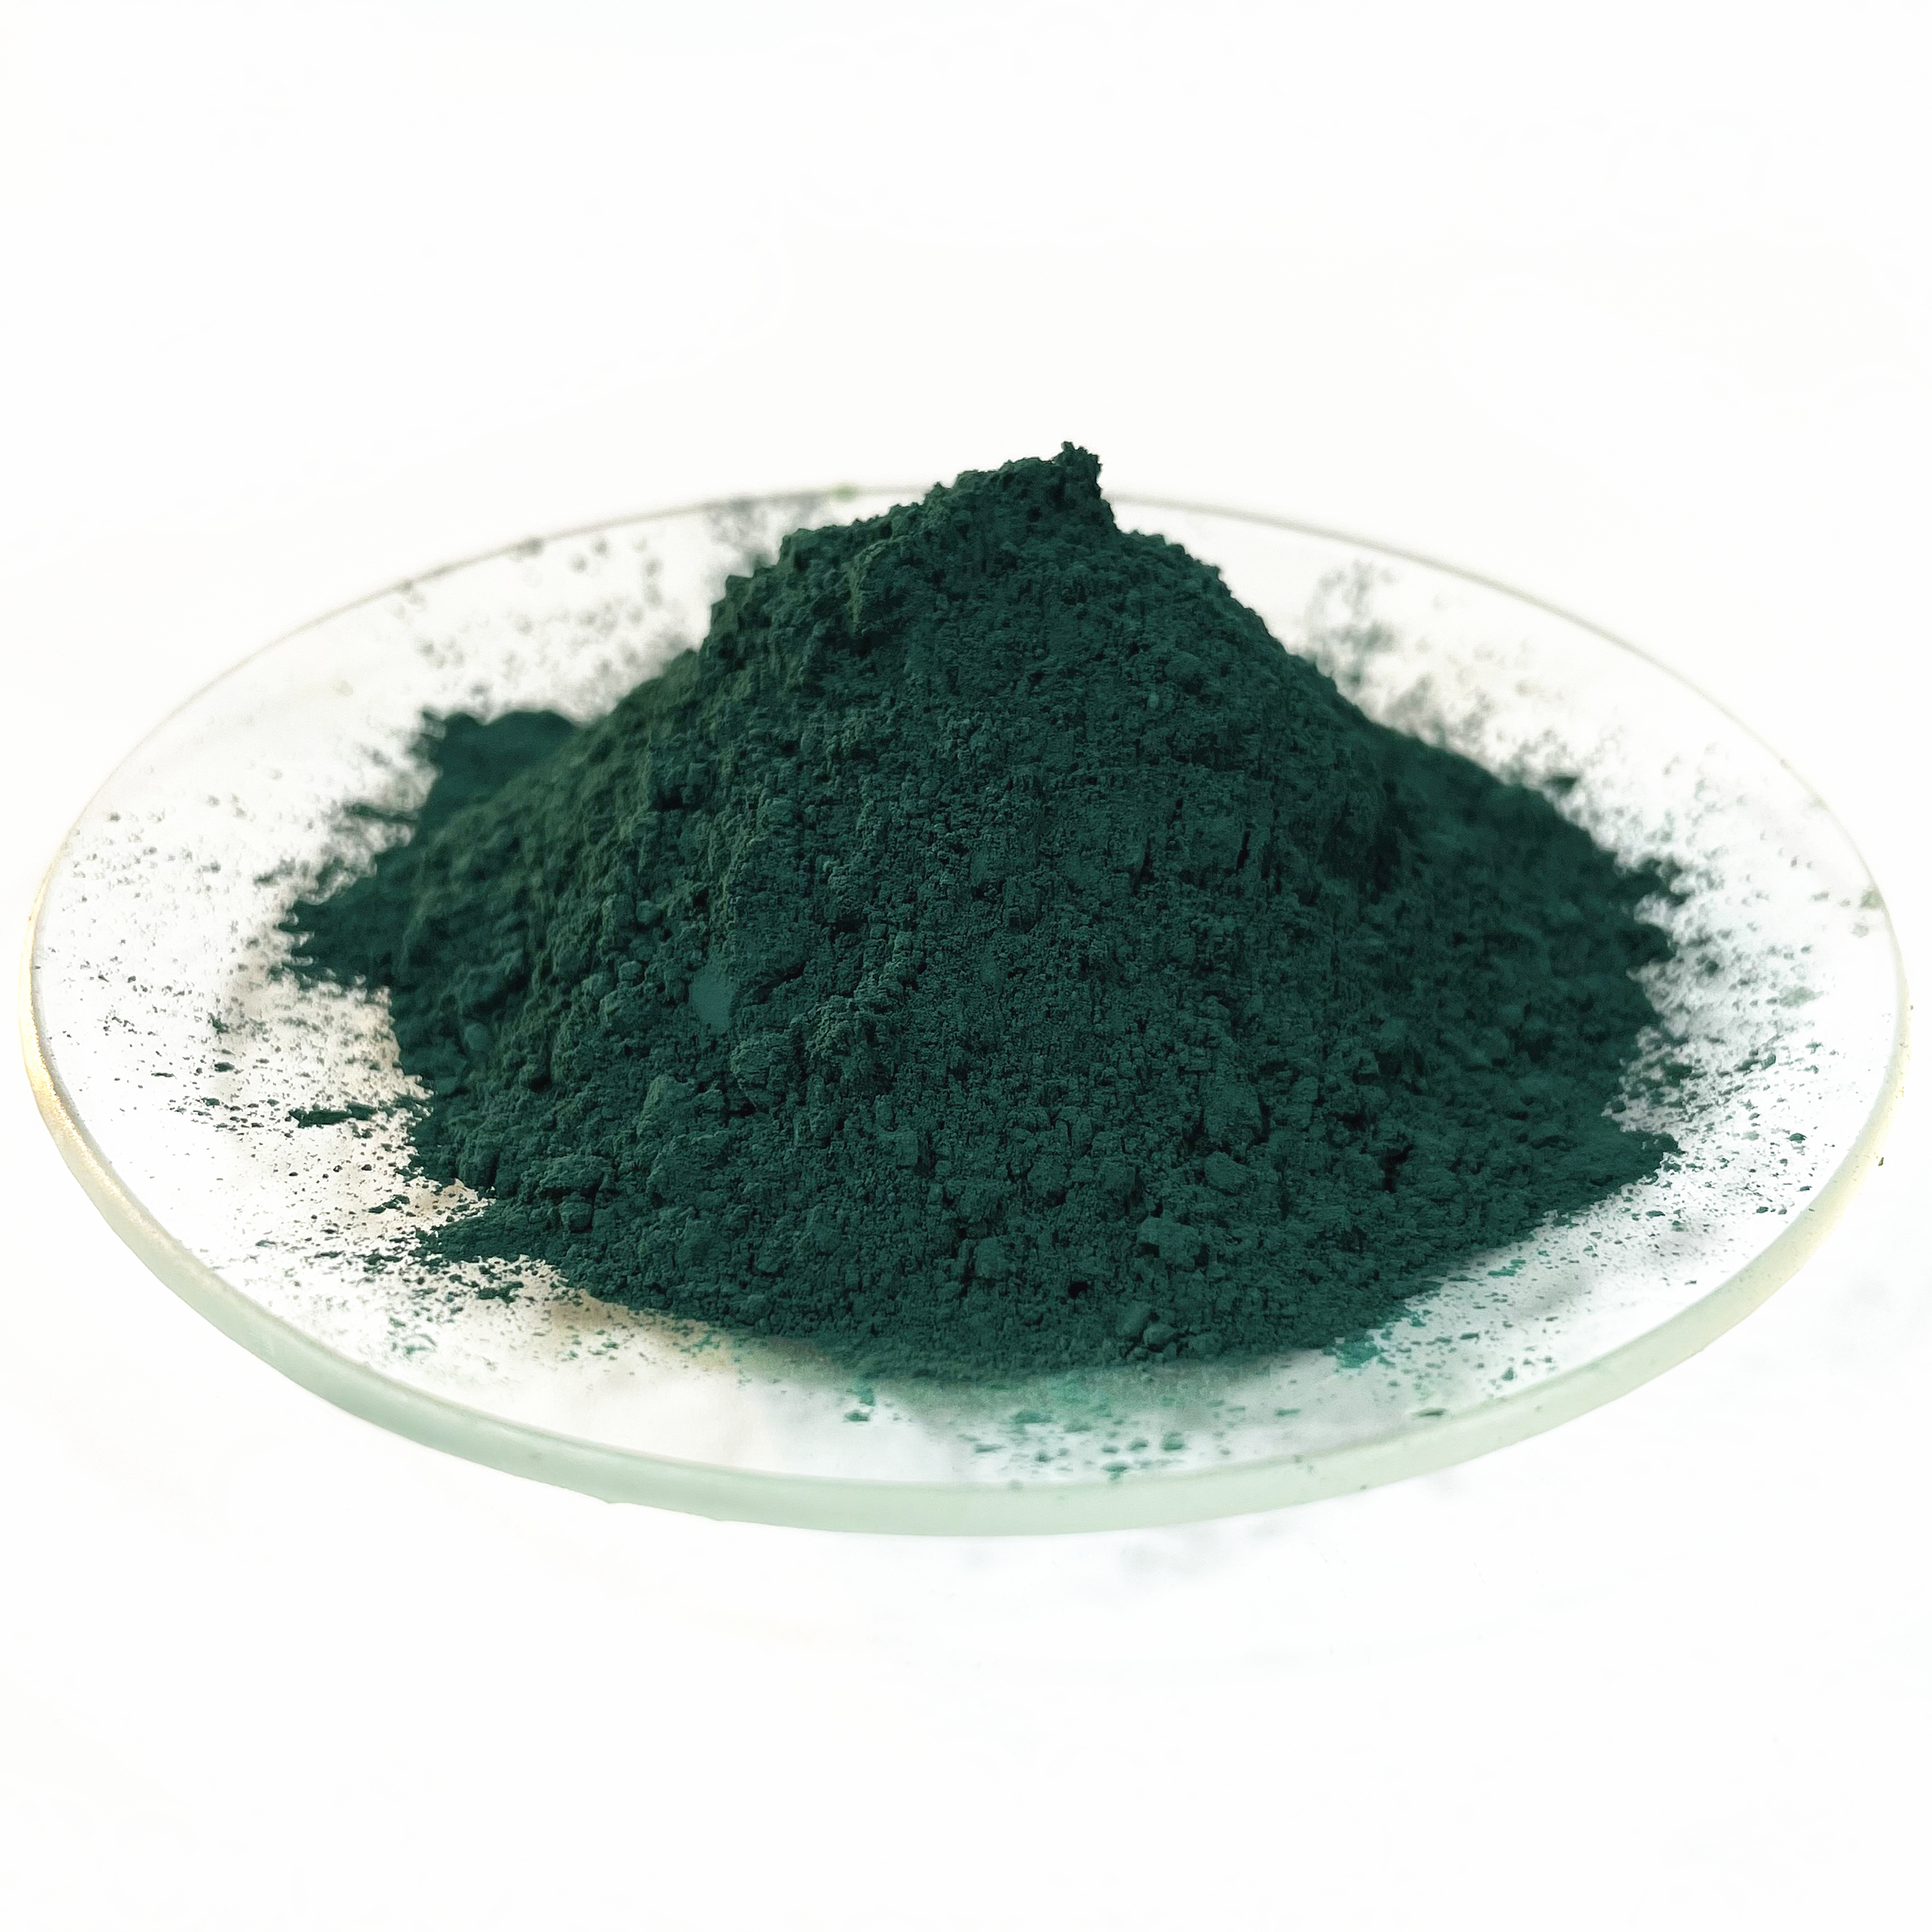 เม็ดสีซีเมนต์คอนกรีตเซรามิกเหล็กออกไซด์สีเขียว 5605 เม็ดสีอนินทรีย์